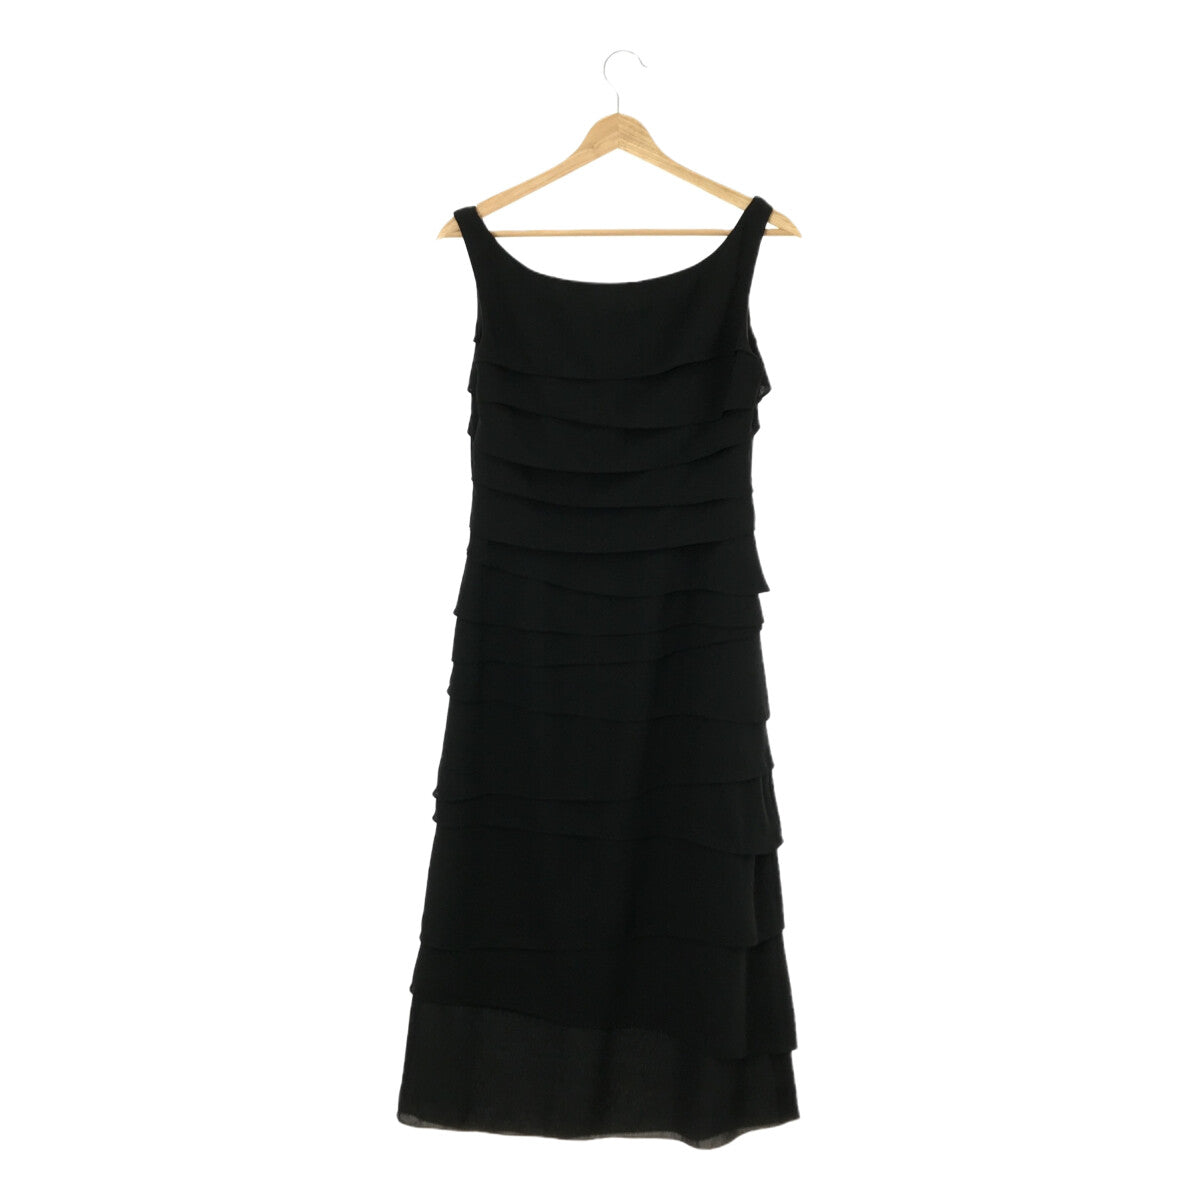 98cm購入価格シビラのリトルブラックドレス